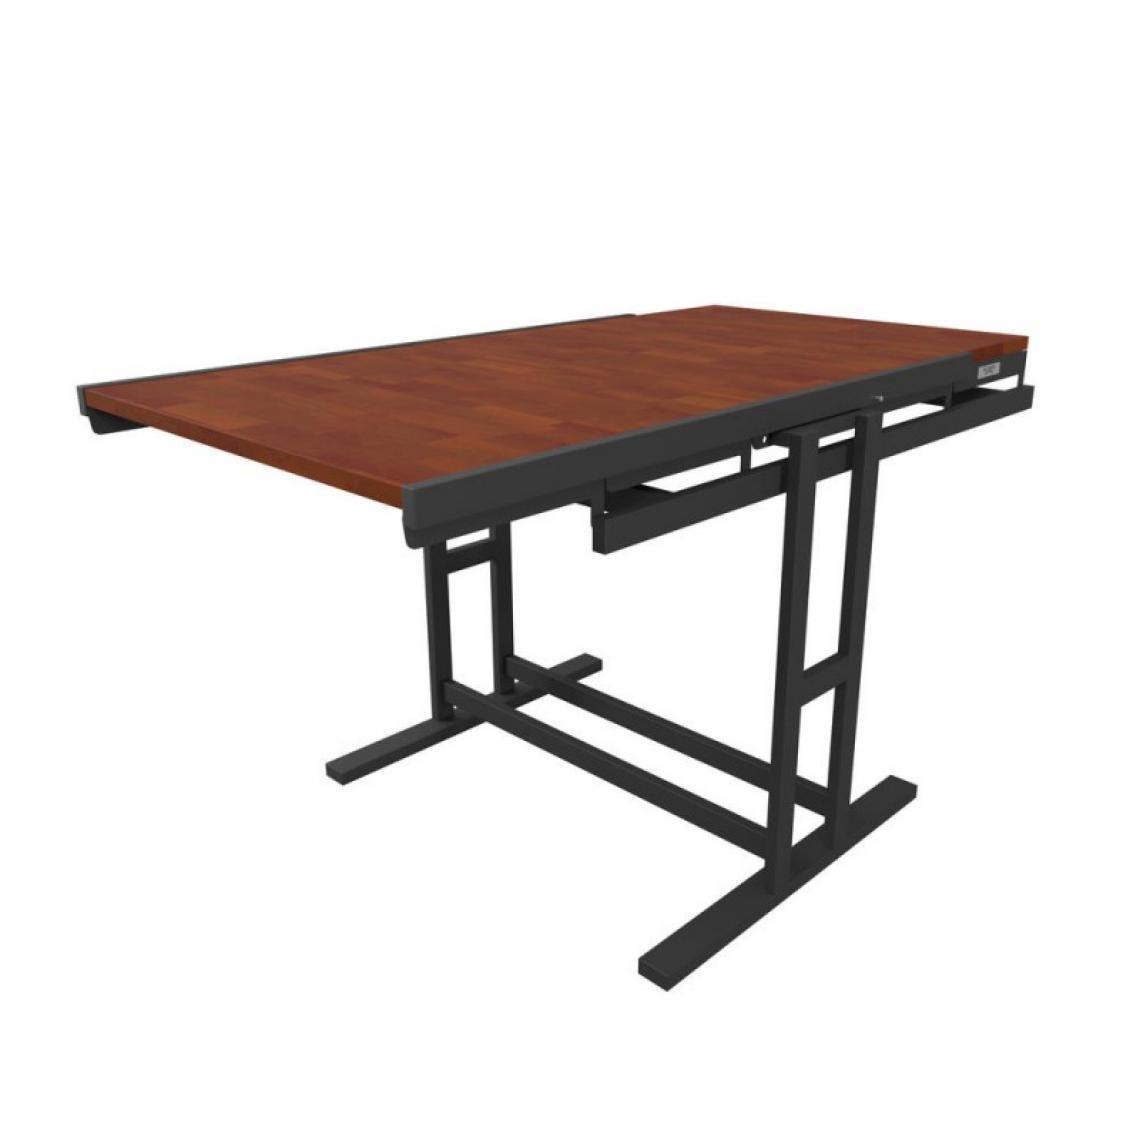 Blumie - Table modulable en Bois (L140 x l80 x H77 cm) convertible en Etagère - style industriel - Couleur Chêne naturel - Tables à manger